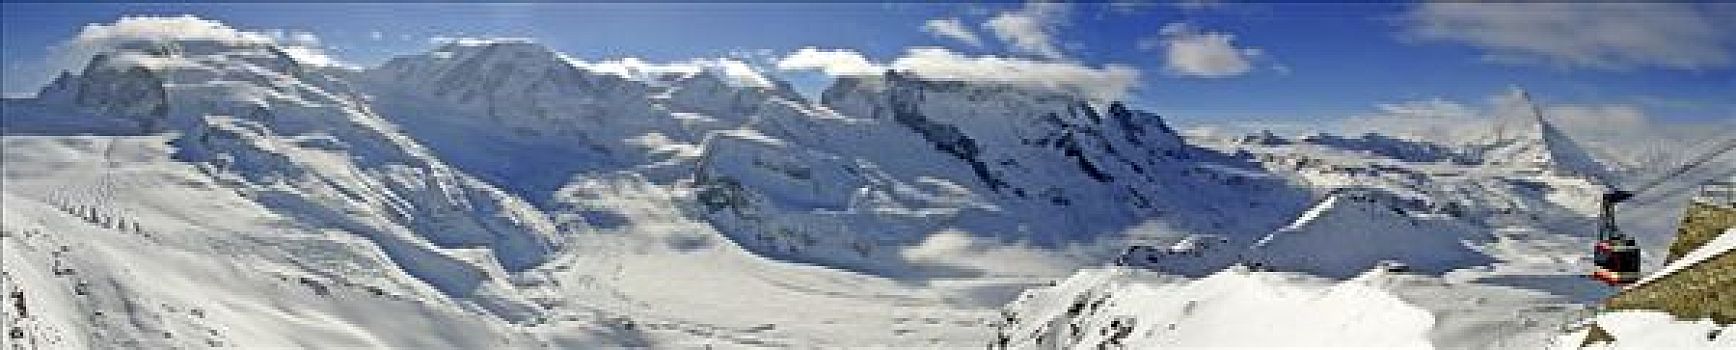 全景,滑雪胜地,策马特峰,左边,右边,粉色,马塔角,吊舱,瓦莱,瑞士